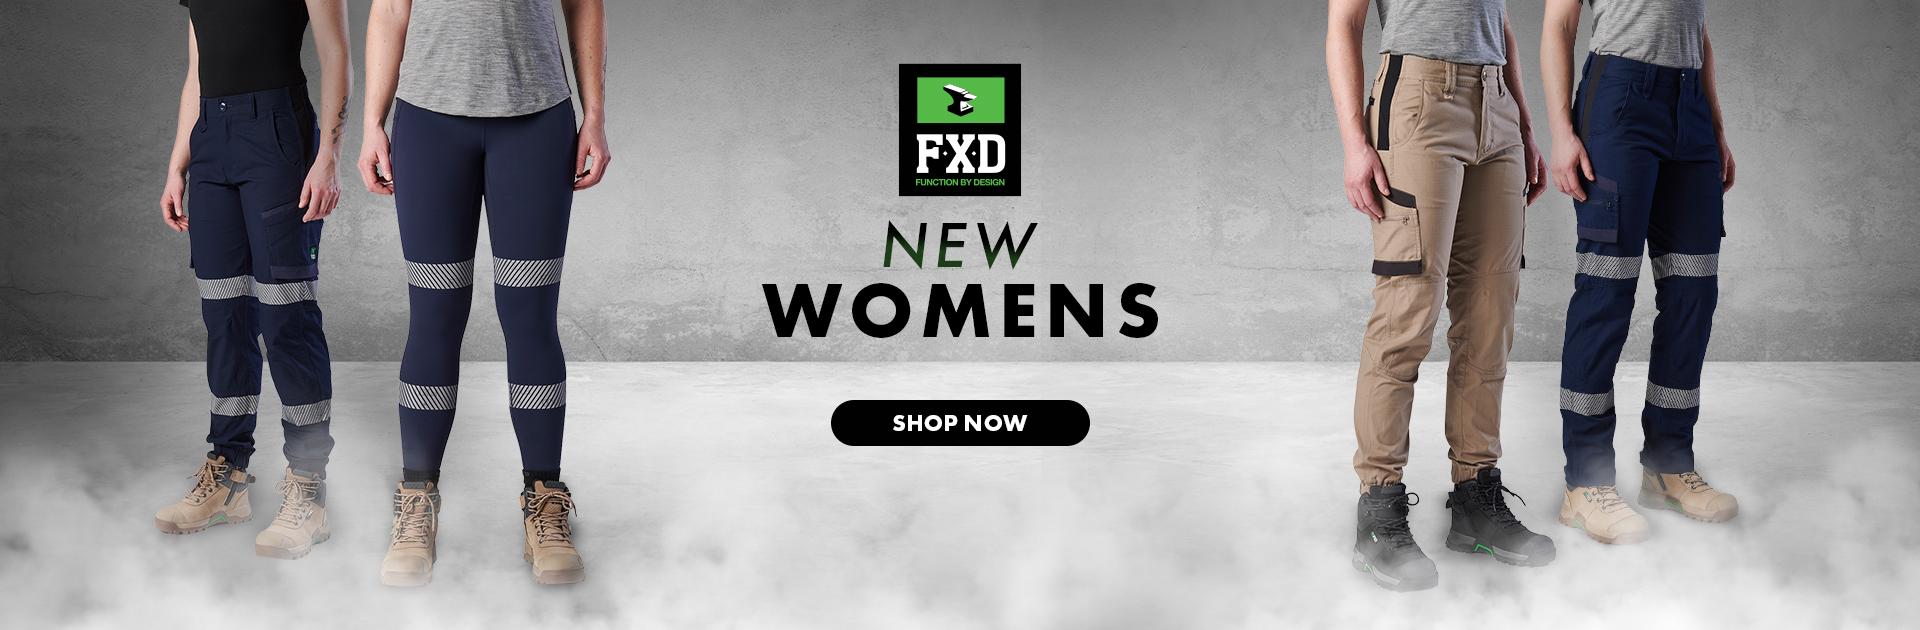 NEW FXD Women's work gear!